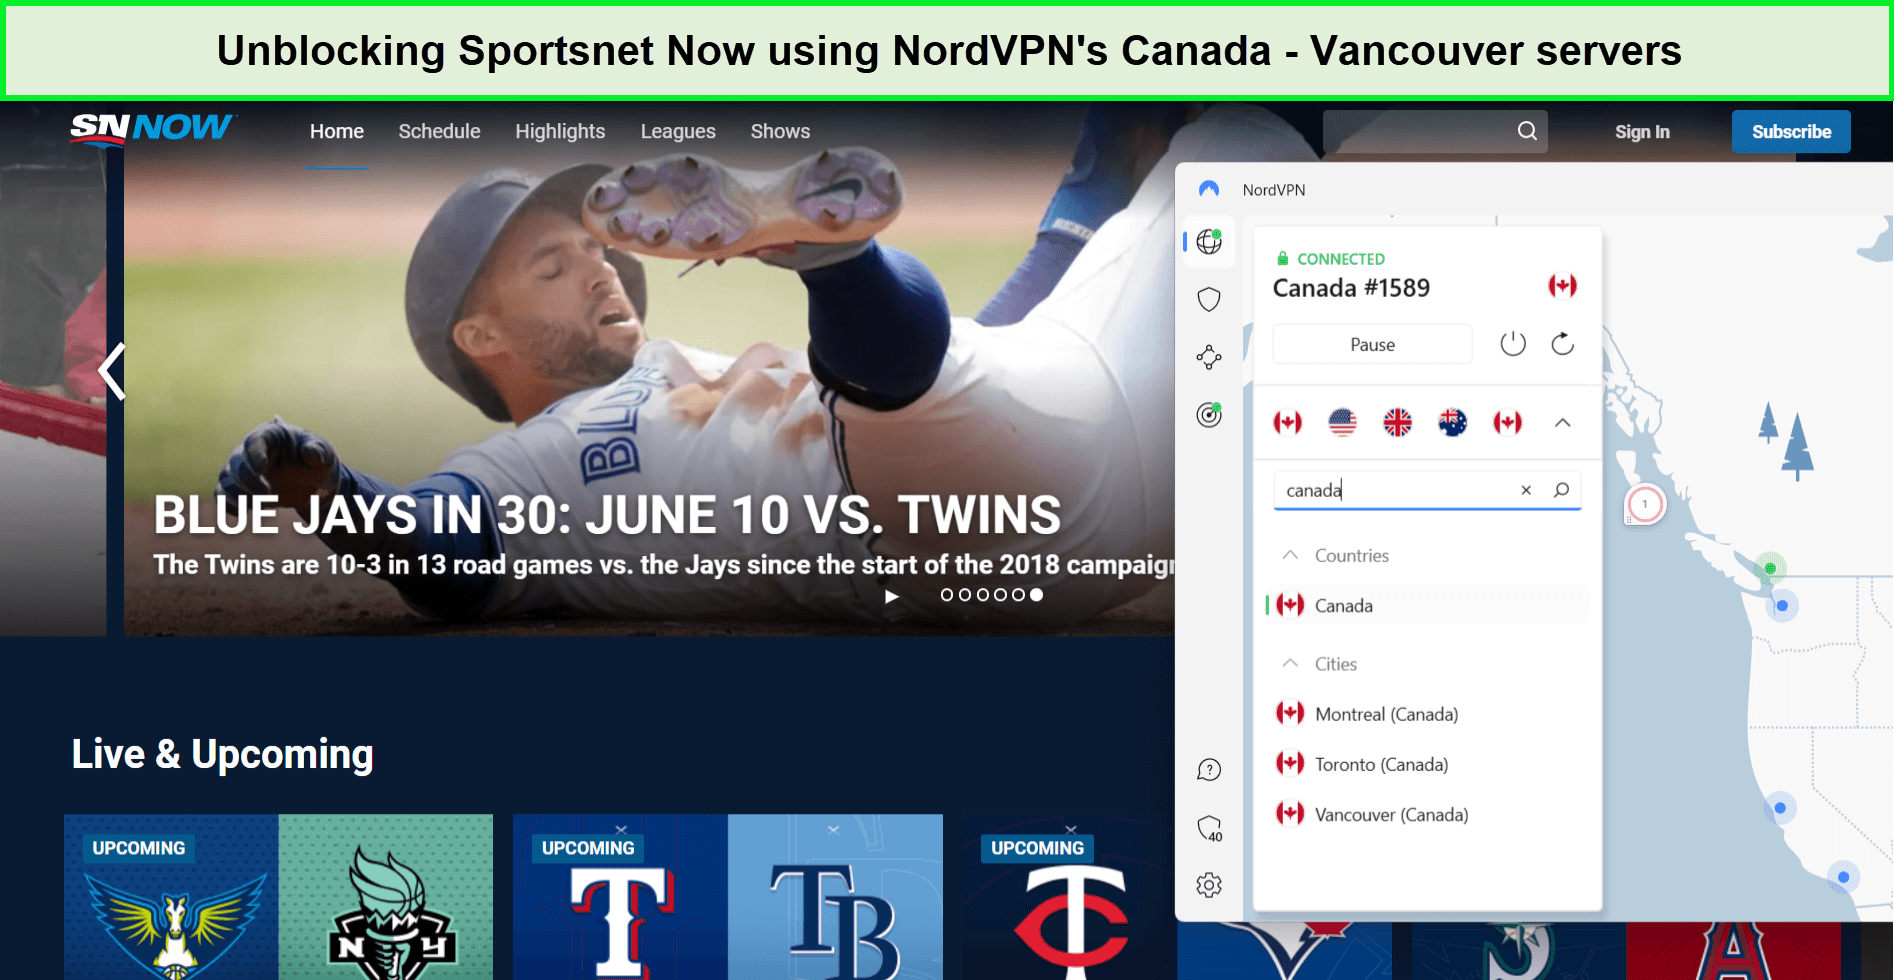 sportsnet-now-in-Canada-nordvpn